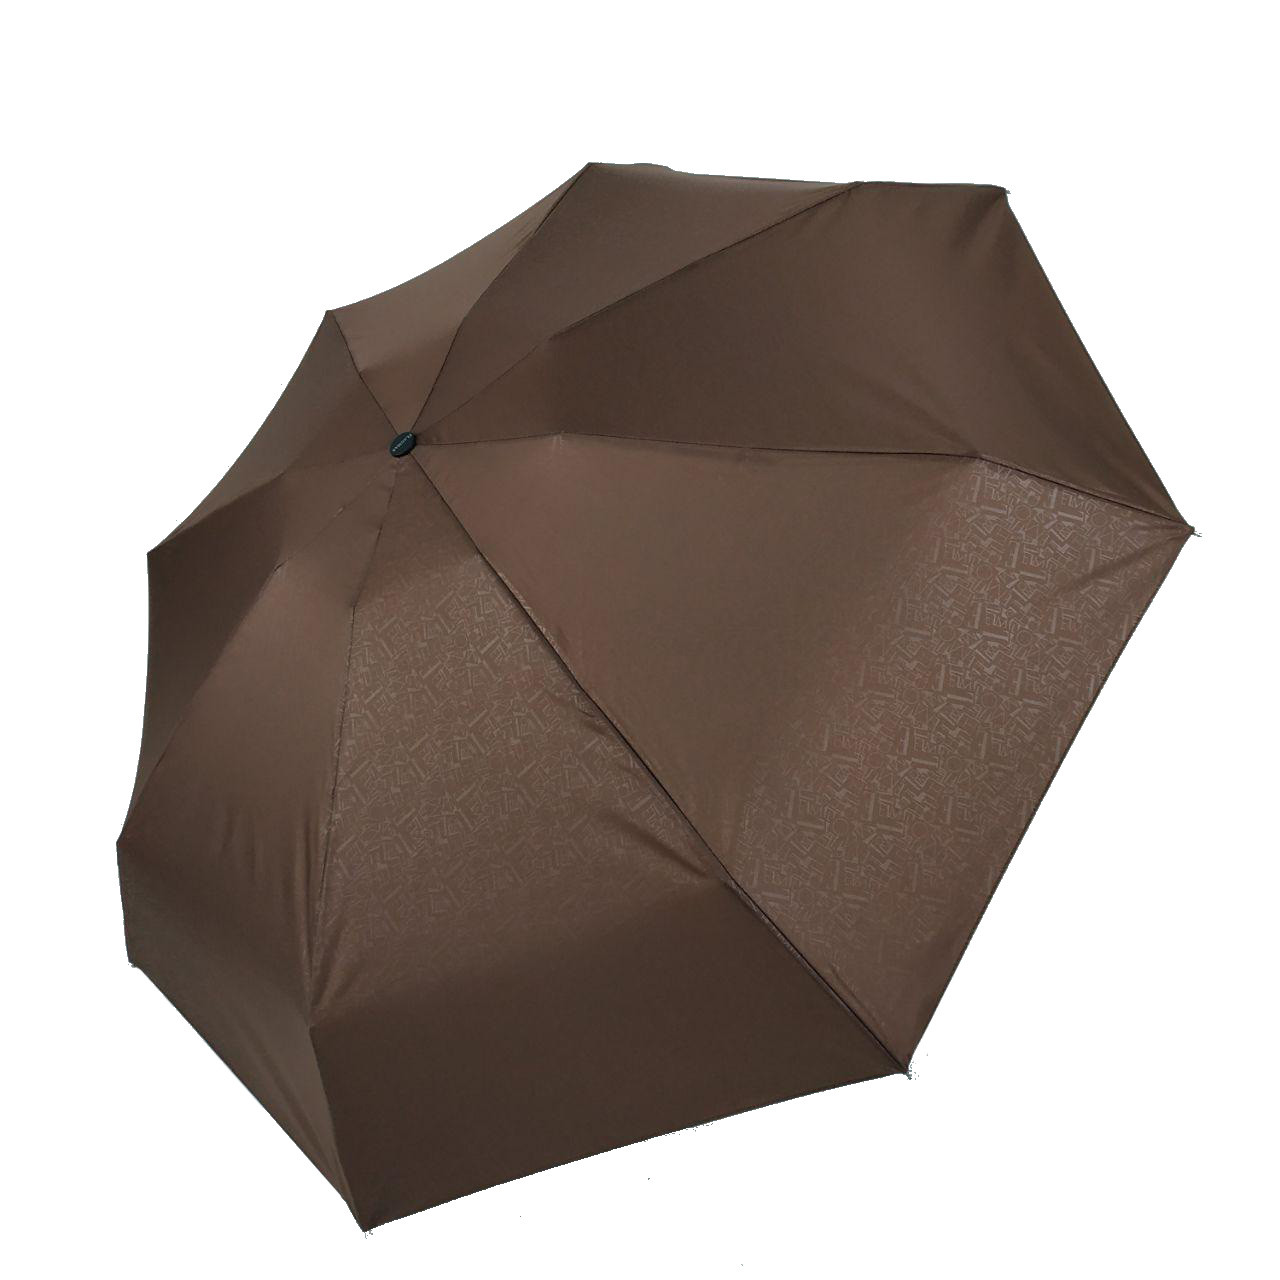 Жіноча механічна міні-парасоля TheBest "Малютка", коричневий, 0504-5, фото 1